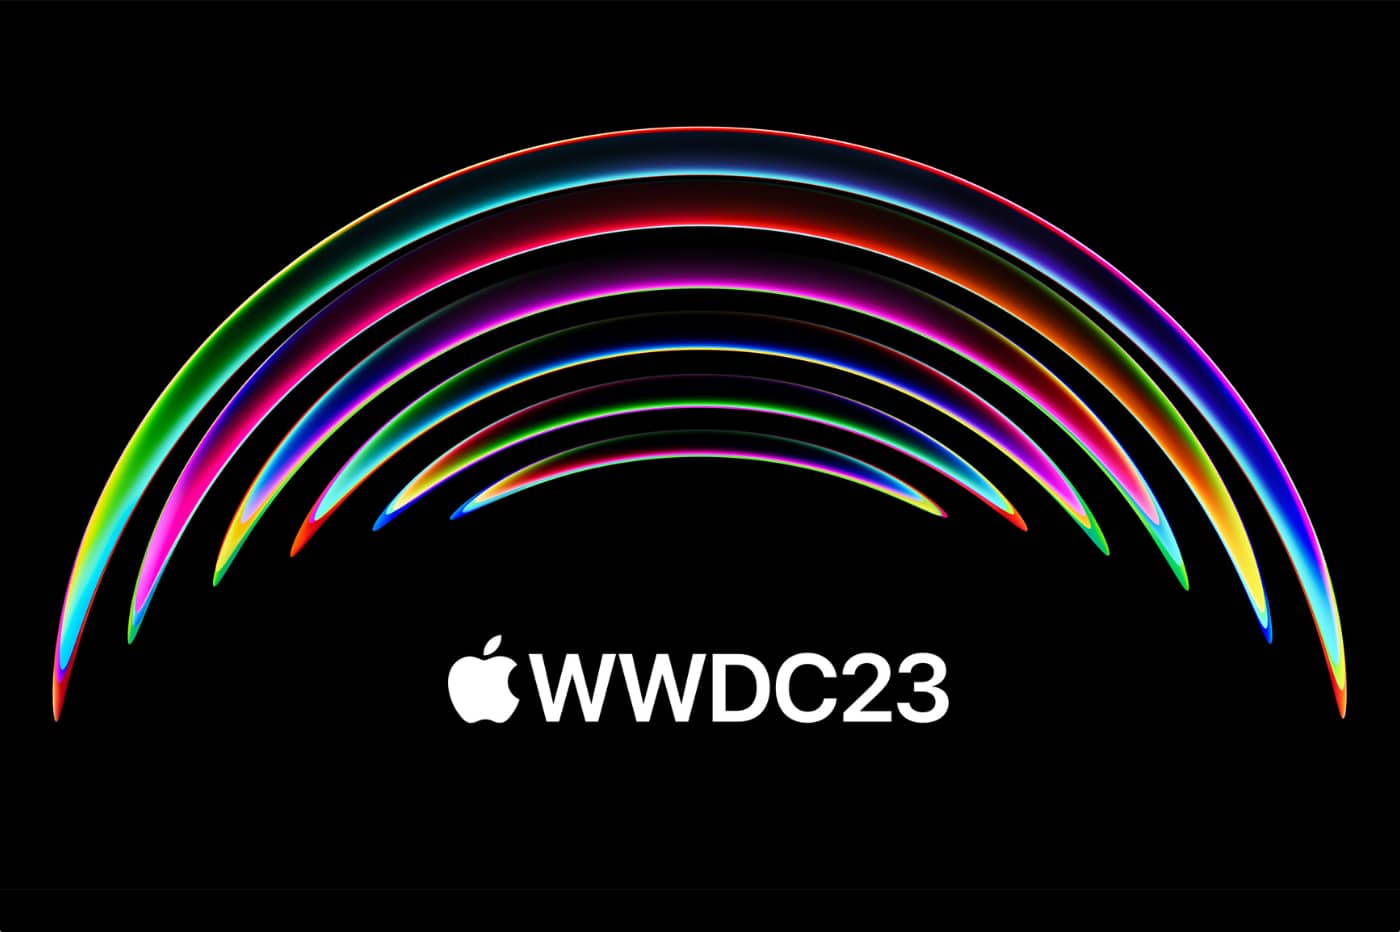 Le visuel d'annonce de la WWDC 2023, d'Apple.